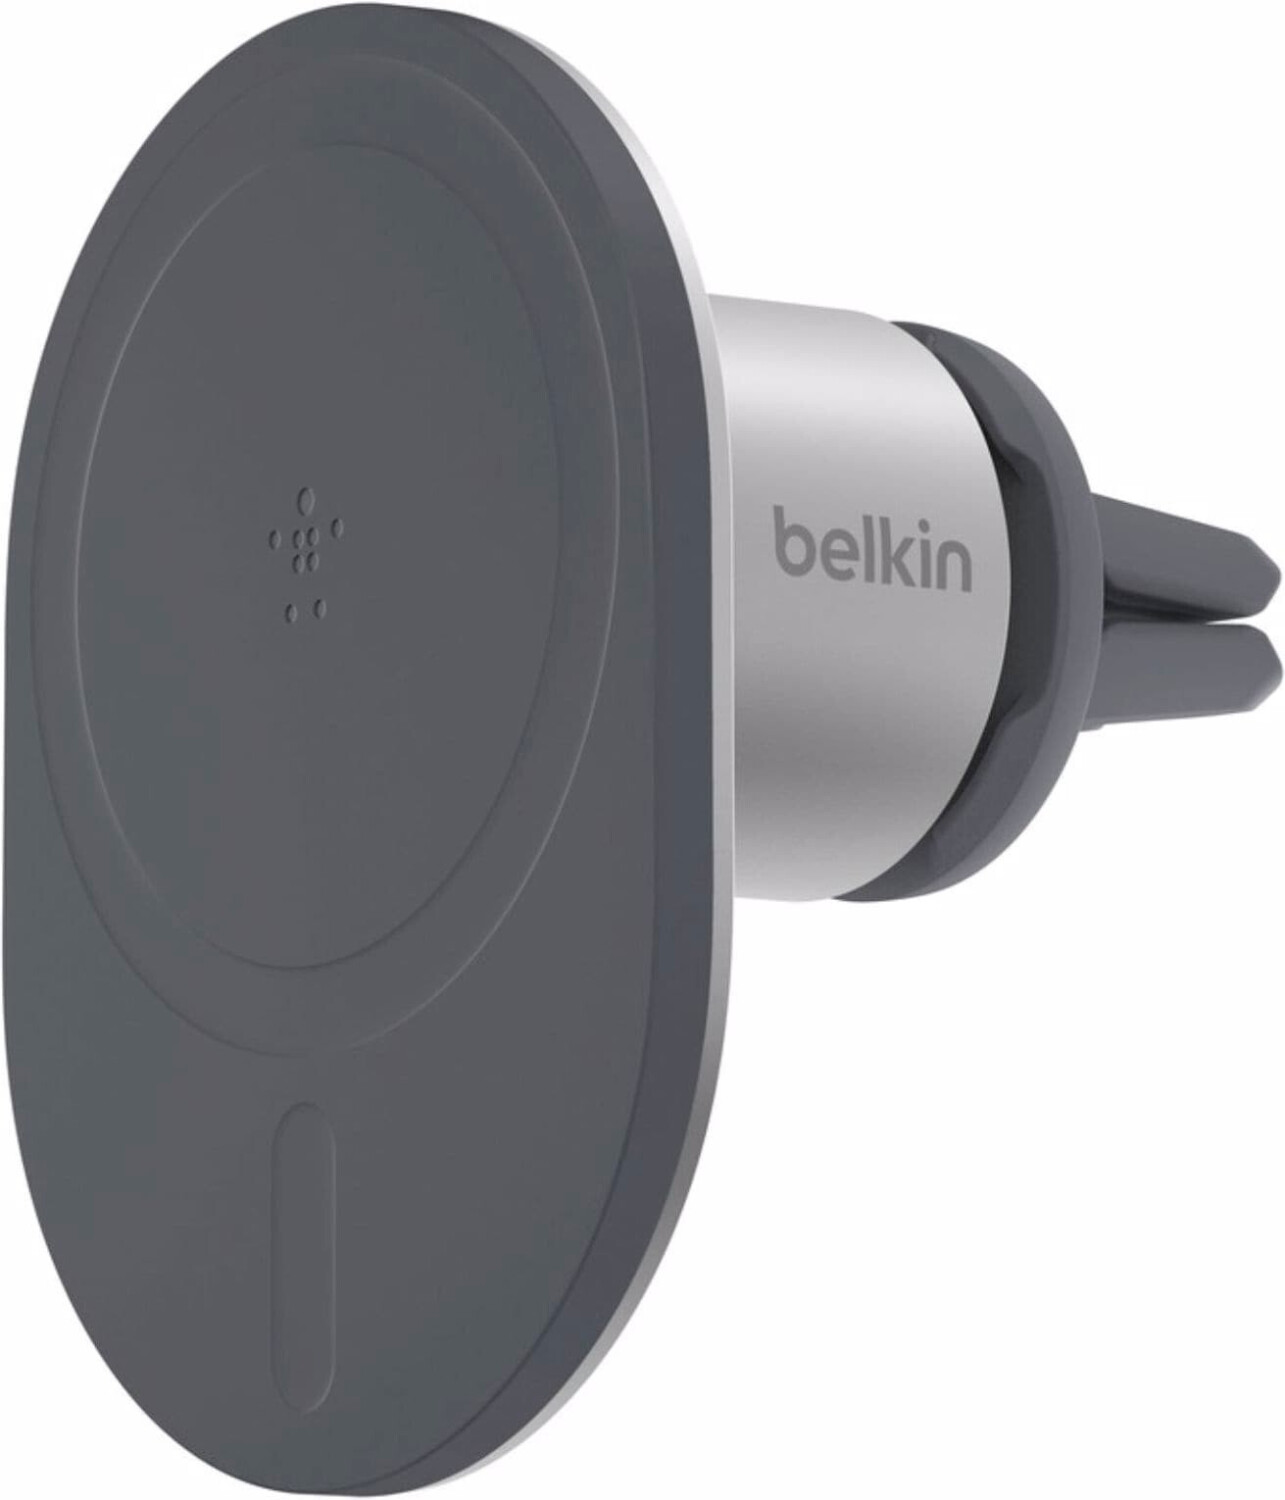 Belkin Magnetische Kfz-Lüftungshalterung (iPhone 12) ab 70,57